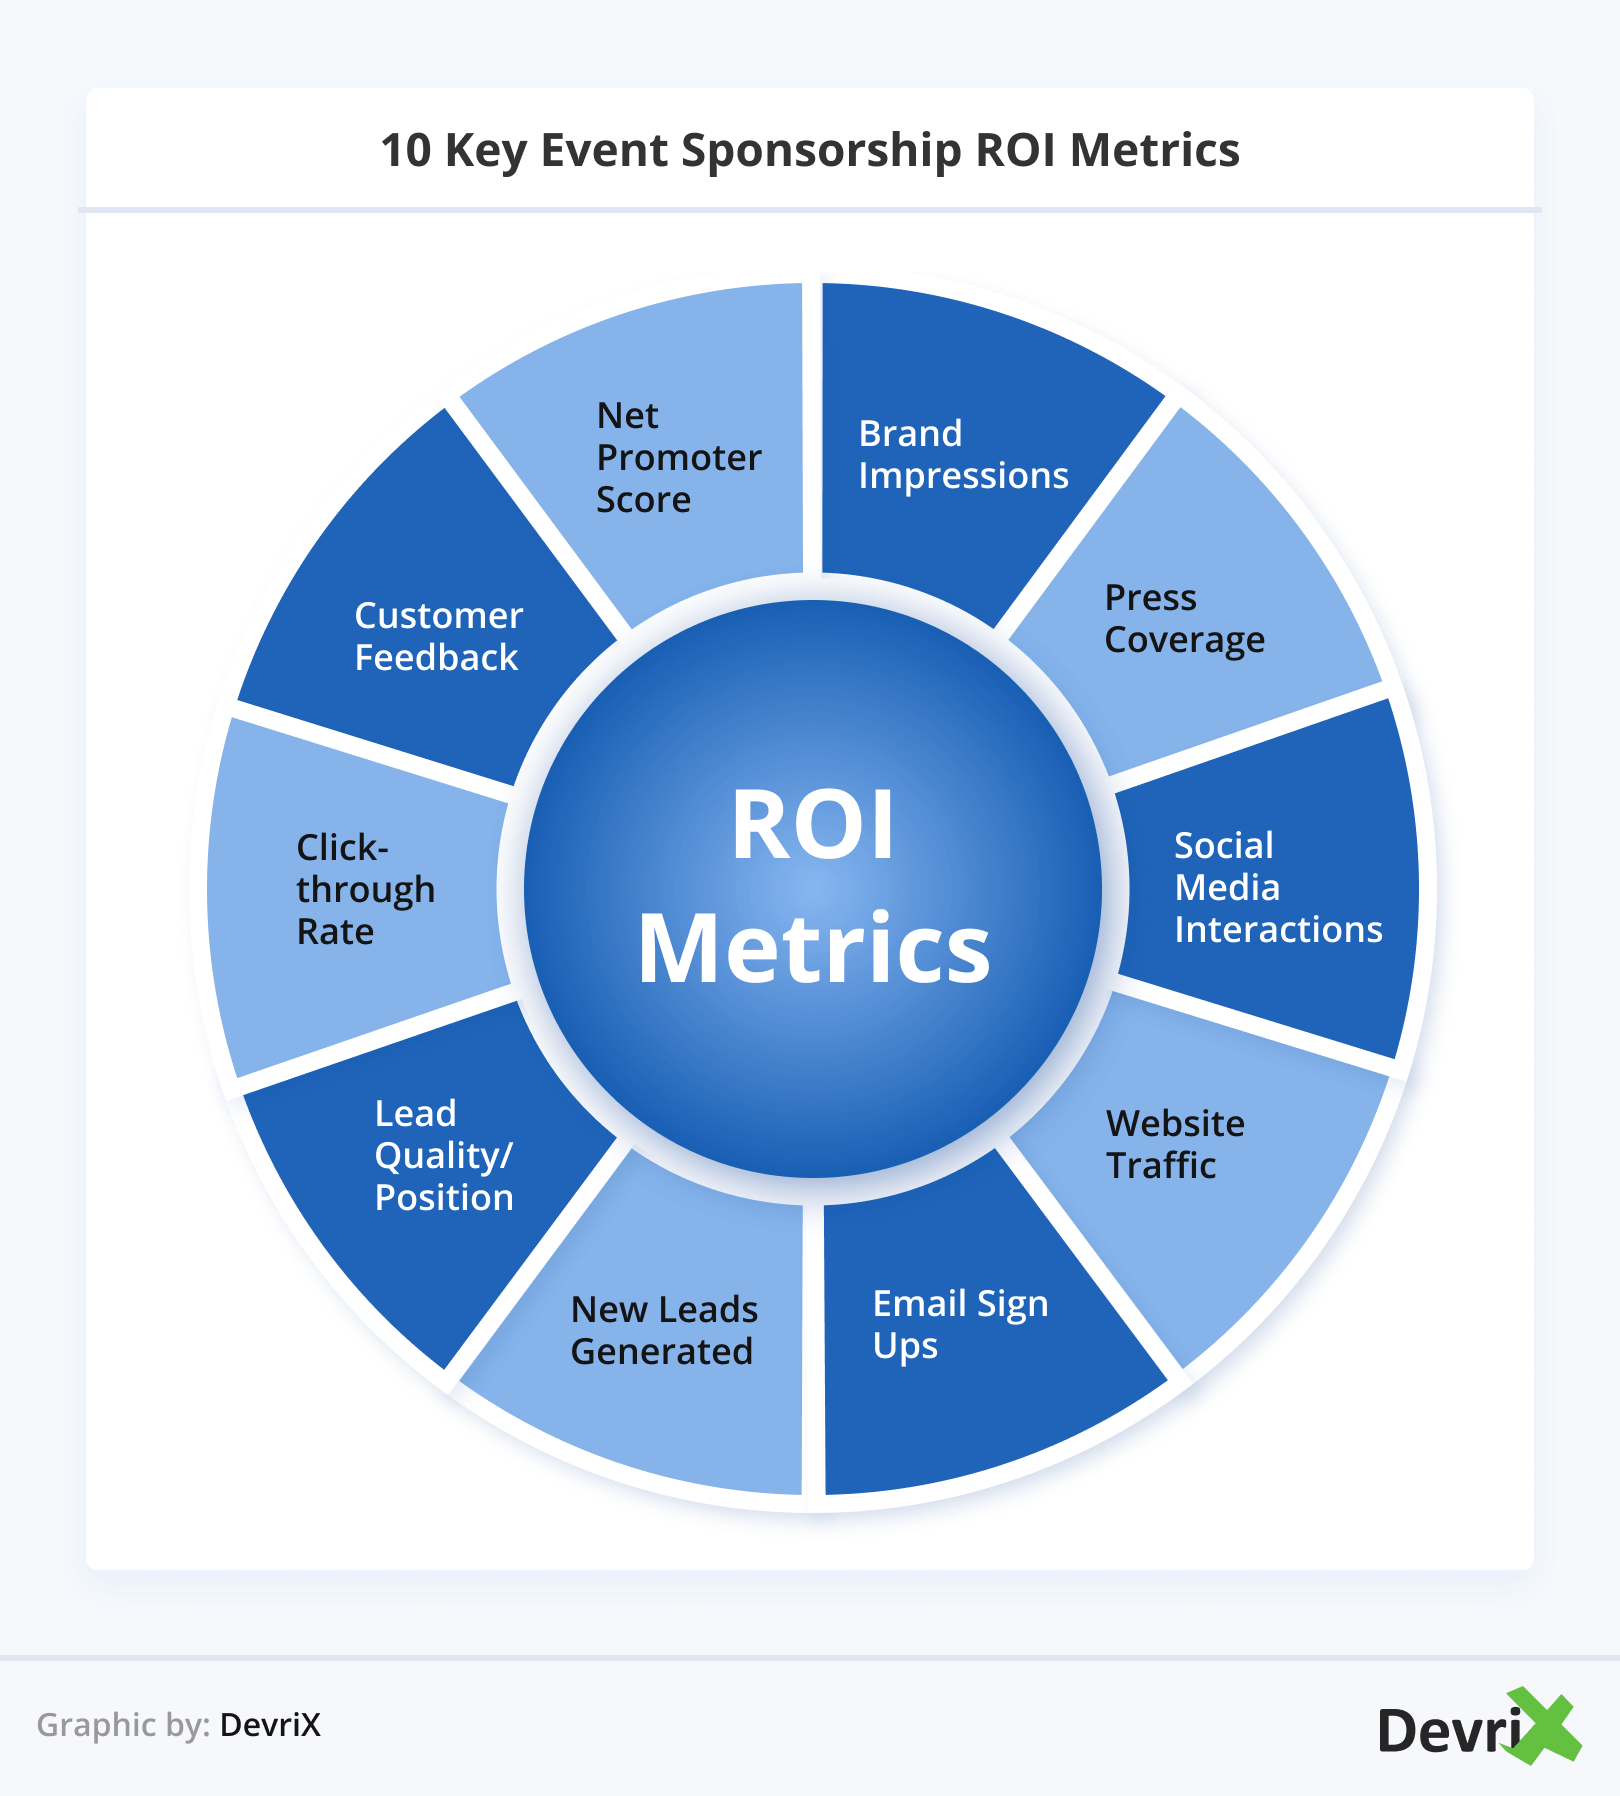 10 Key Event Sponsorship ROI Metrics